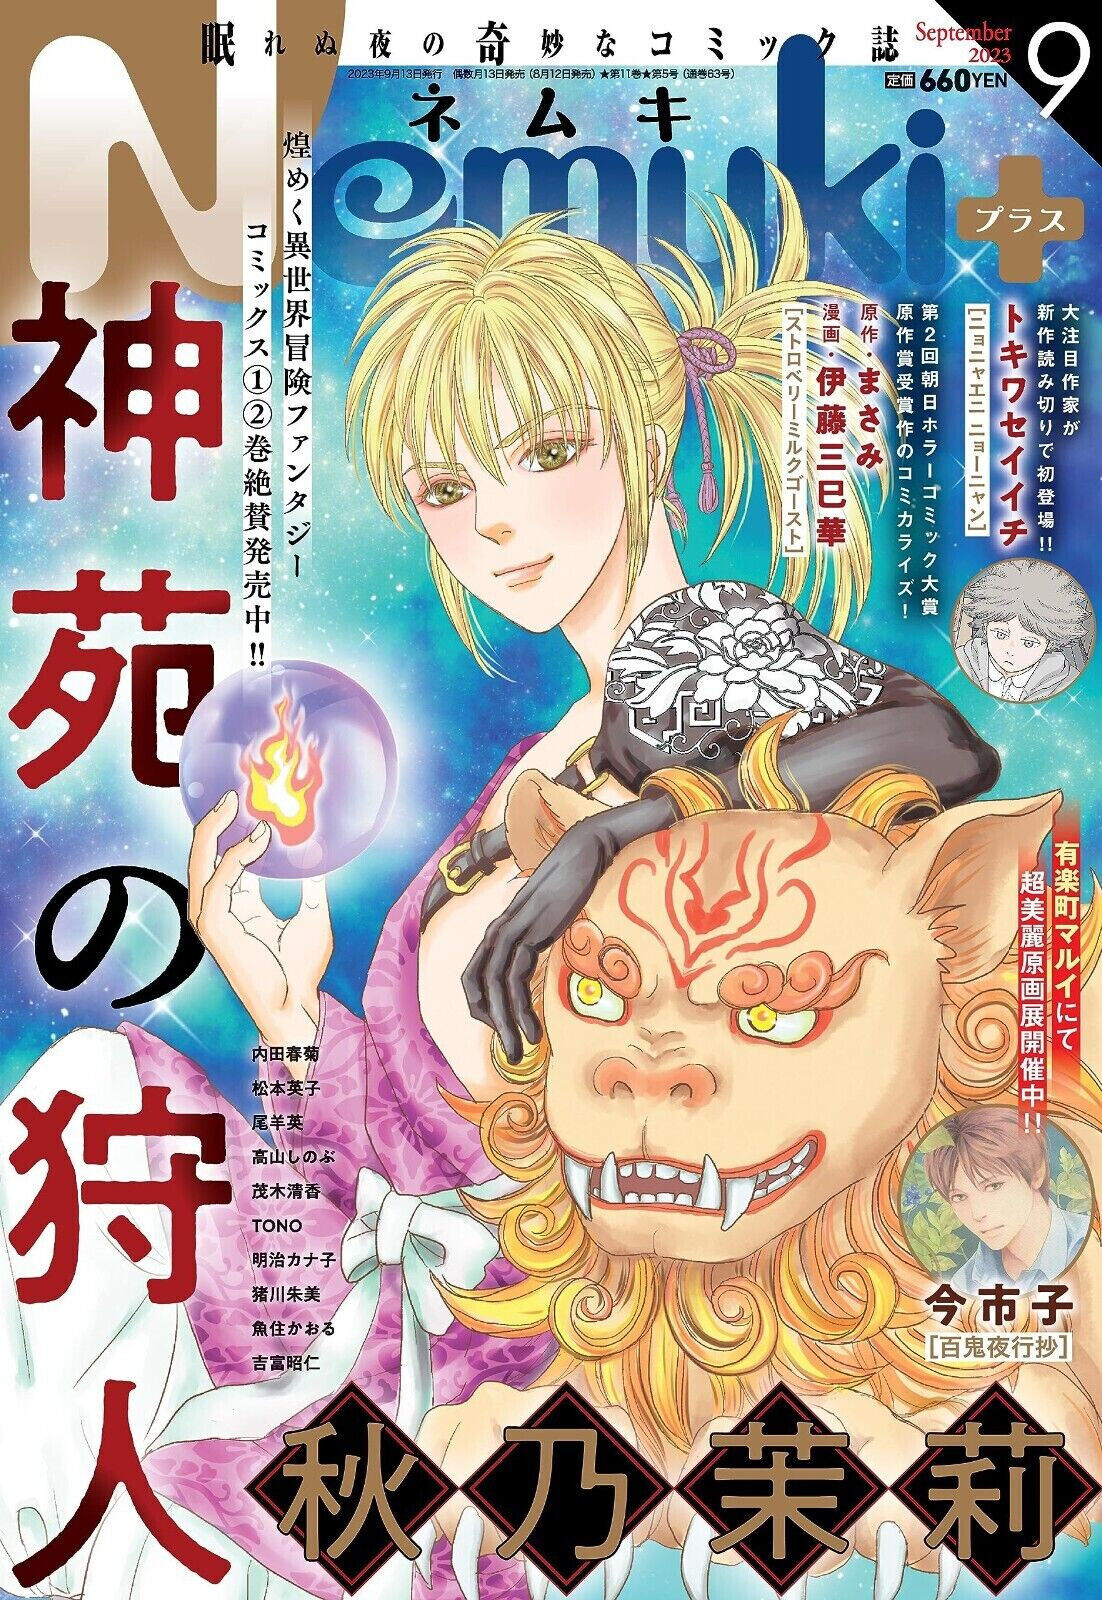 Nemuki+ September 2023 Japanese Magazine manga Shinen no karyudo Ichiko Ima